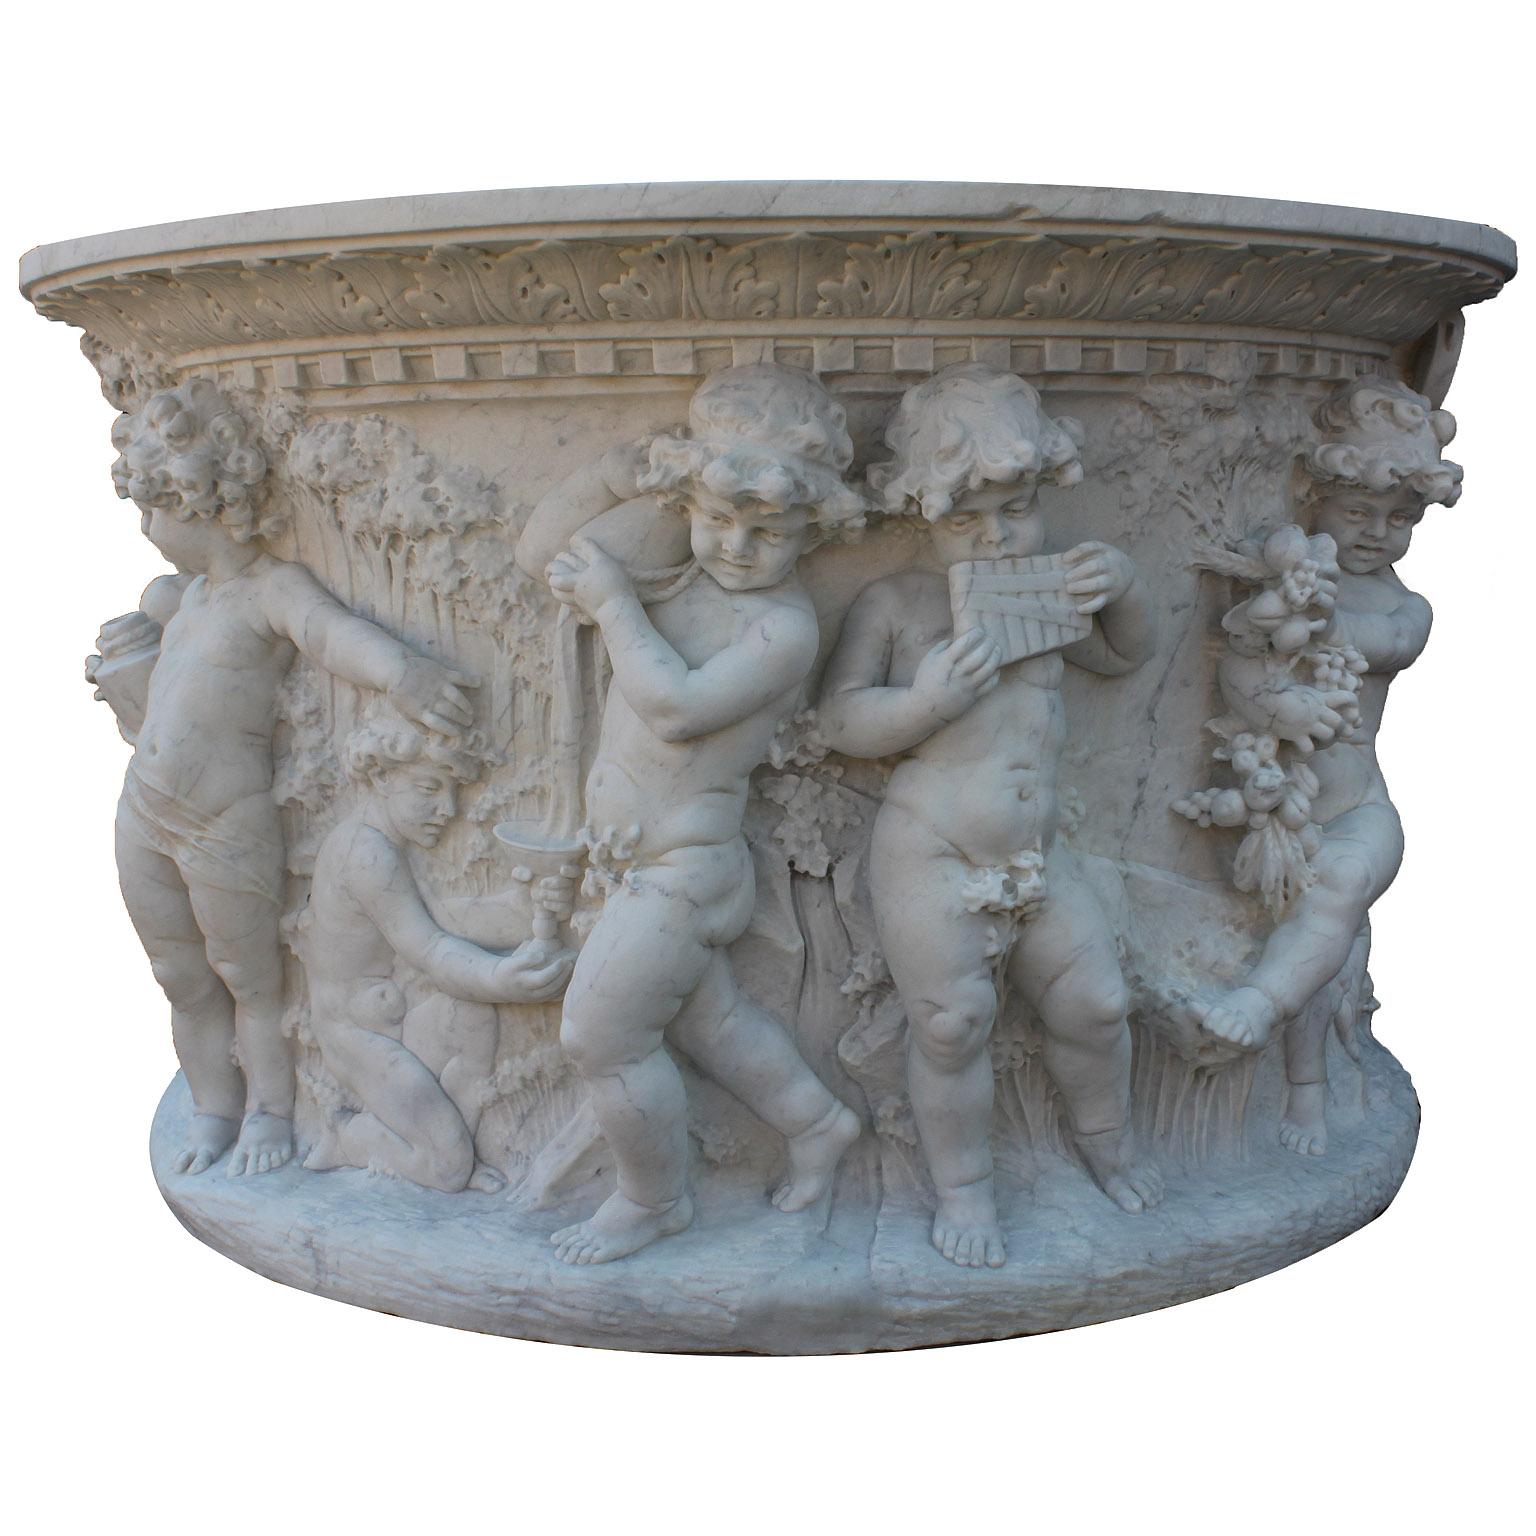 Ein sehr feiner und außergewöhnlich geschnitzter italienischer Wunschbrunnen aus weißem Carrara-Marmor im Stil des Barock-Revivals des 19. und 20. Jahrhunderts, der auf einem achteckigen, zweistufigen Marmorsockel steht. Der kunstvoll geschnitzte